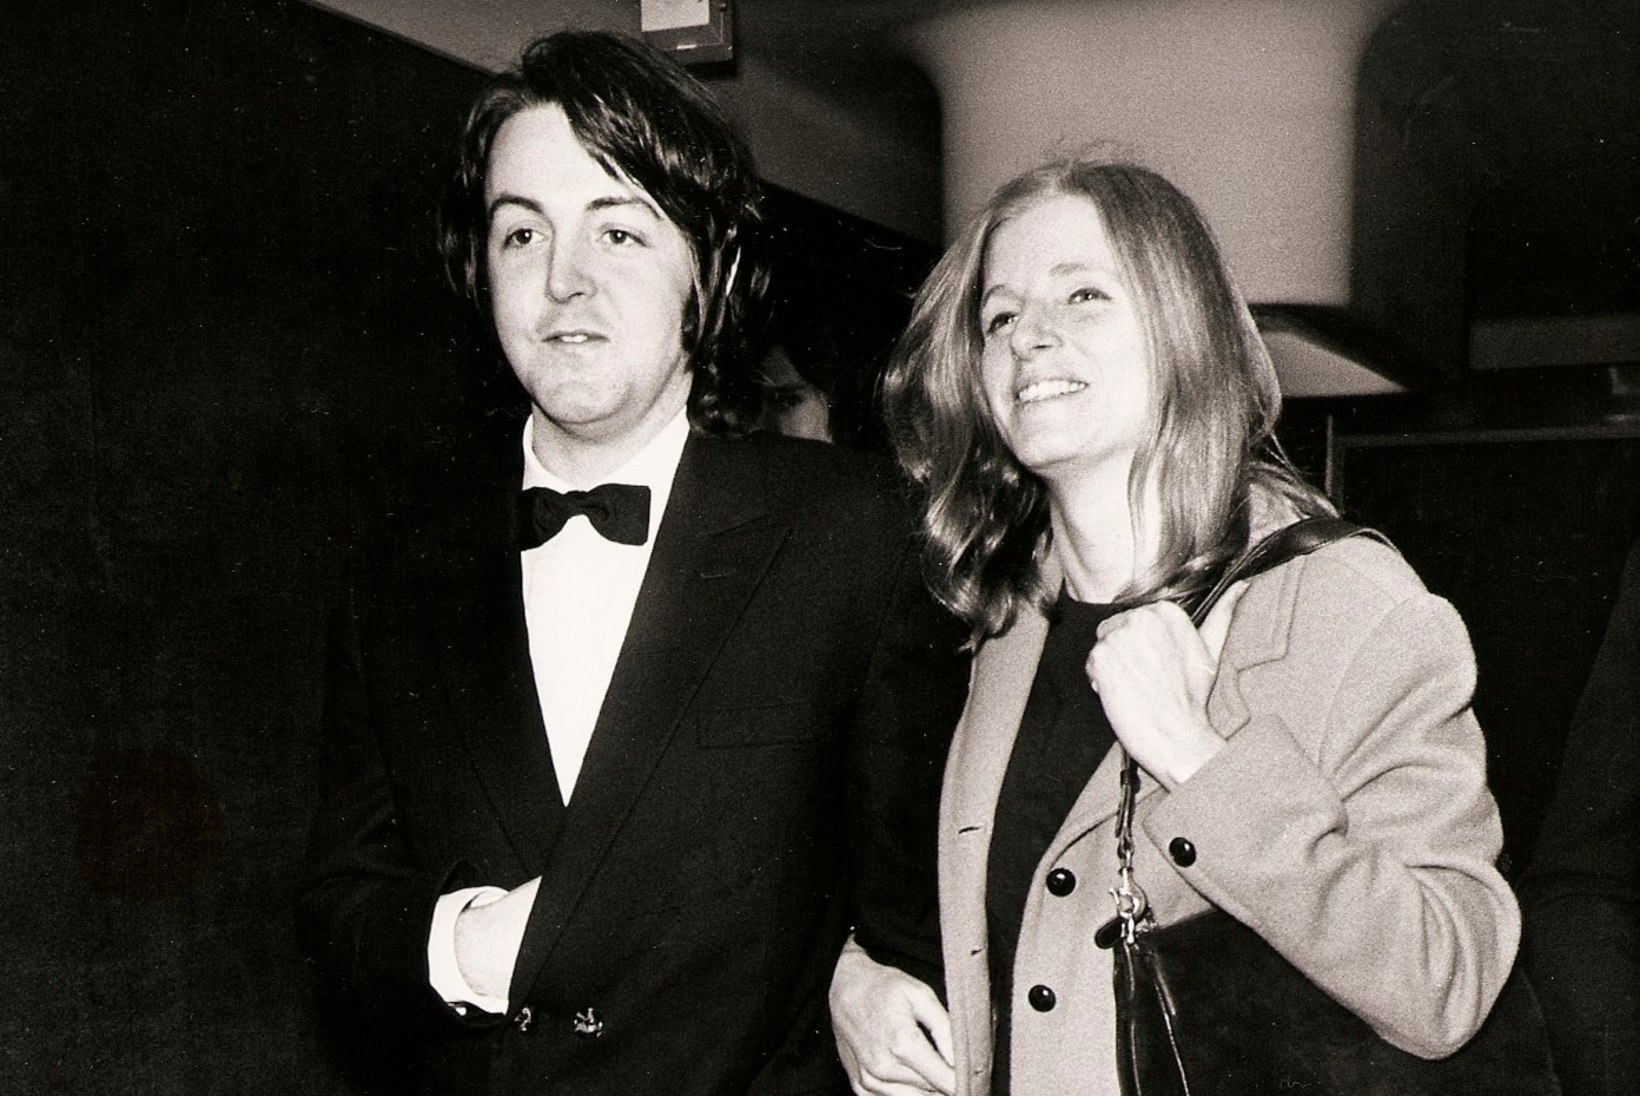 Paul McCartney annetas oma kadunud kaasa fotod tippmuusemile